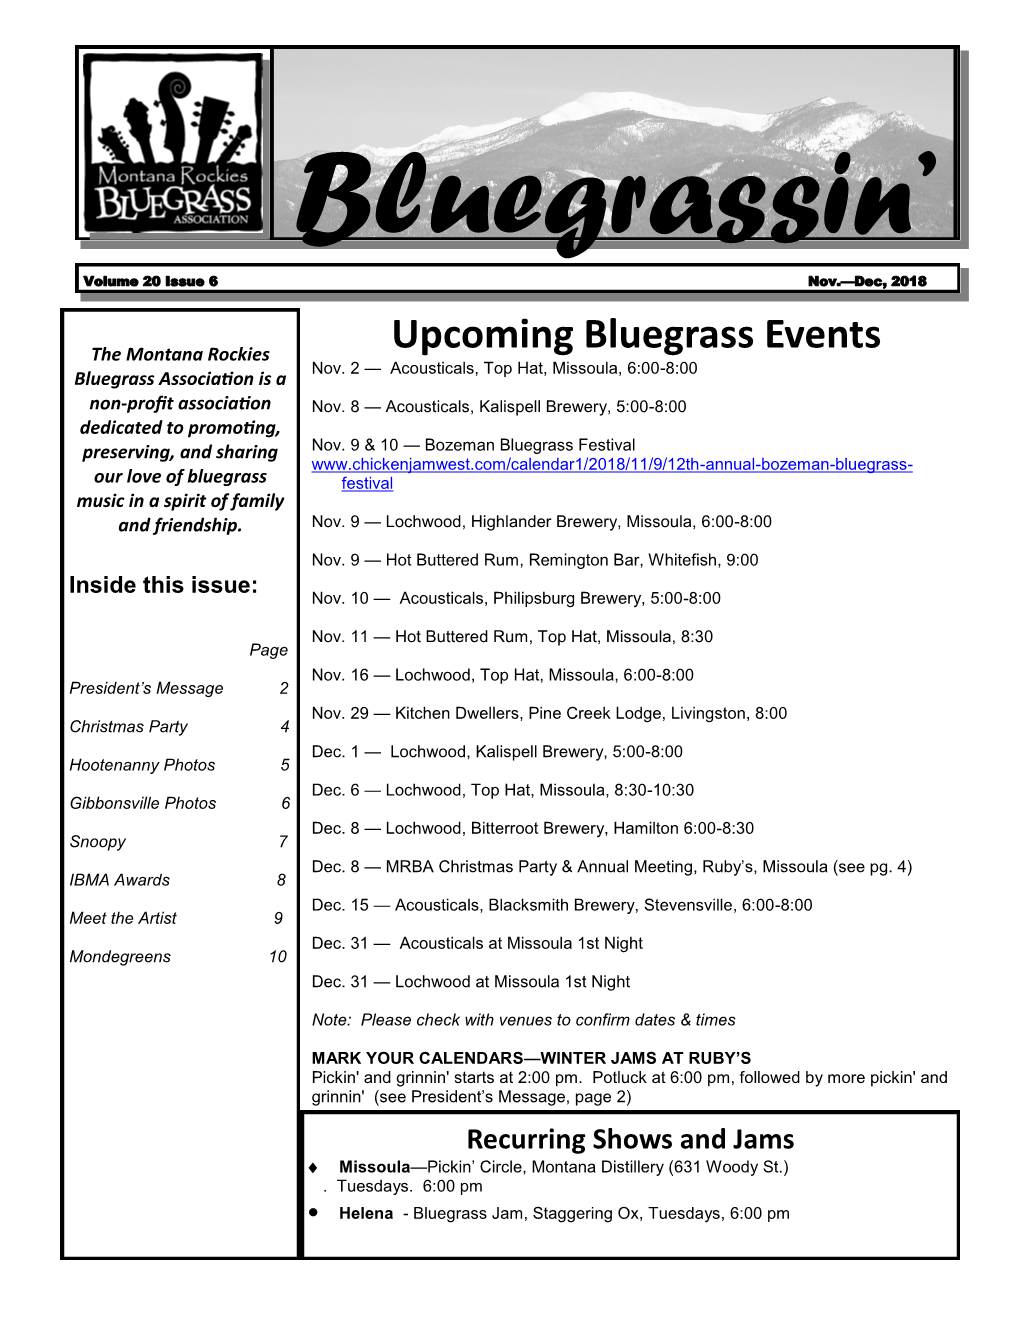 Upcoming Bluegrass Events Nov